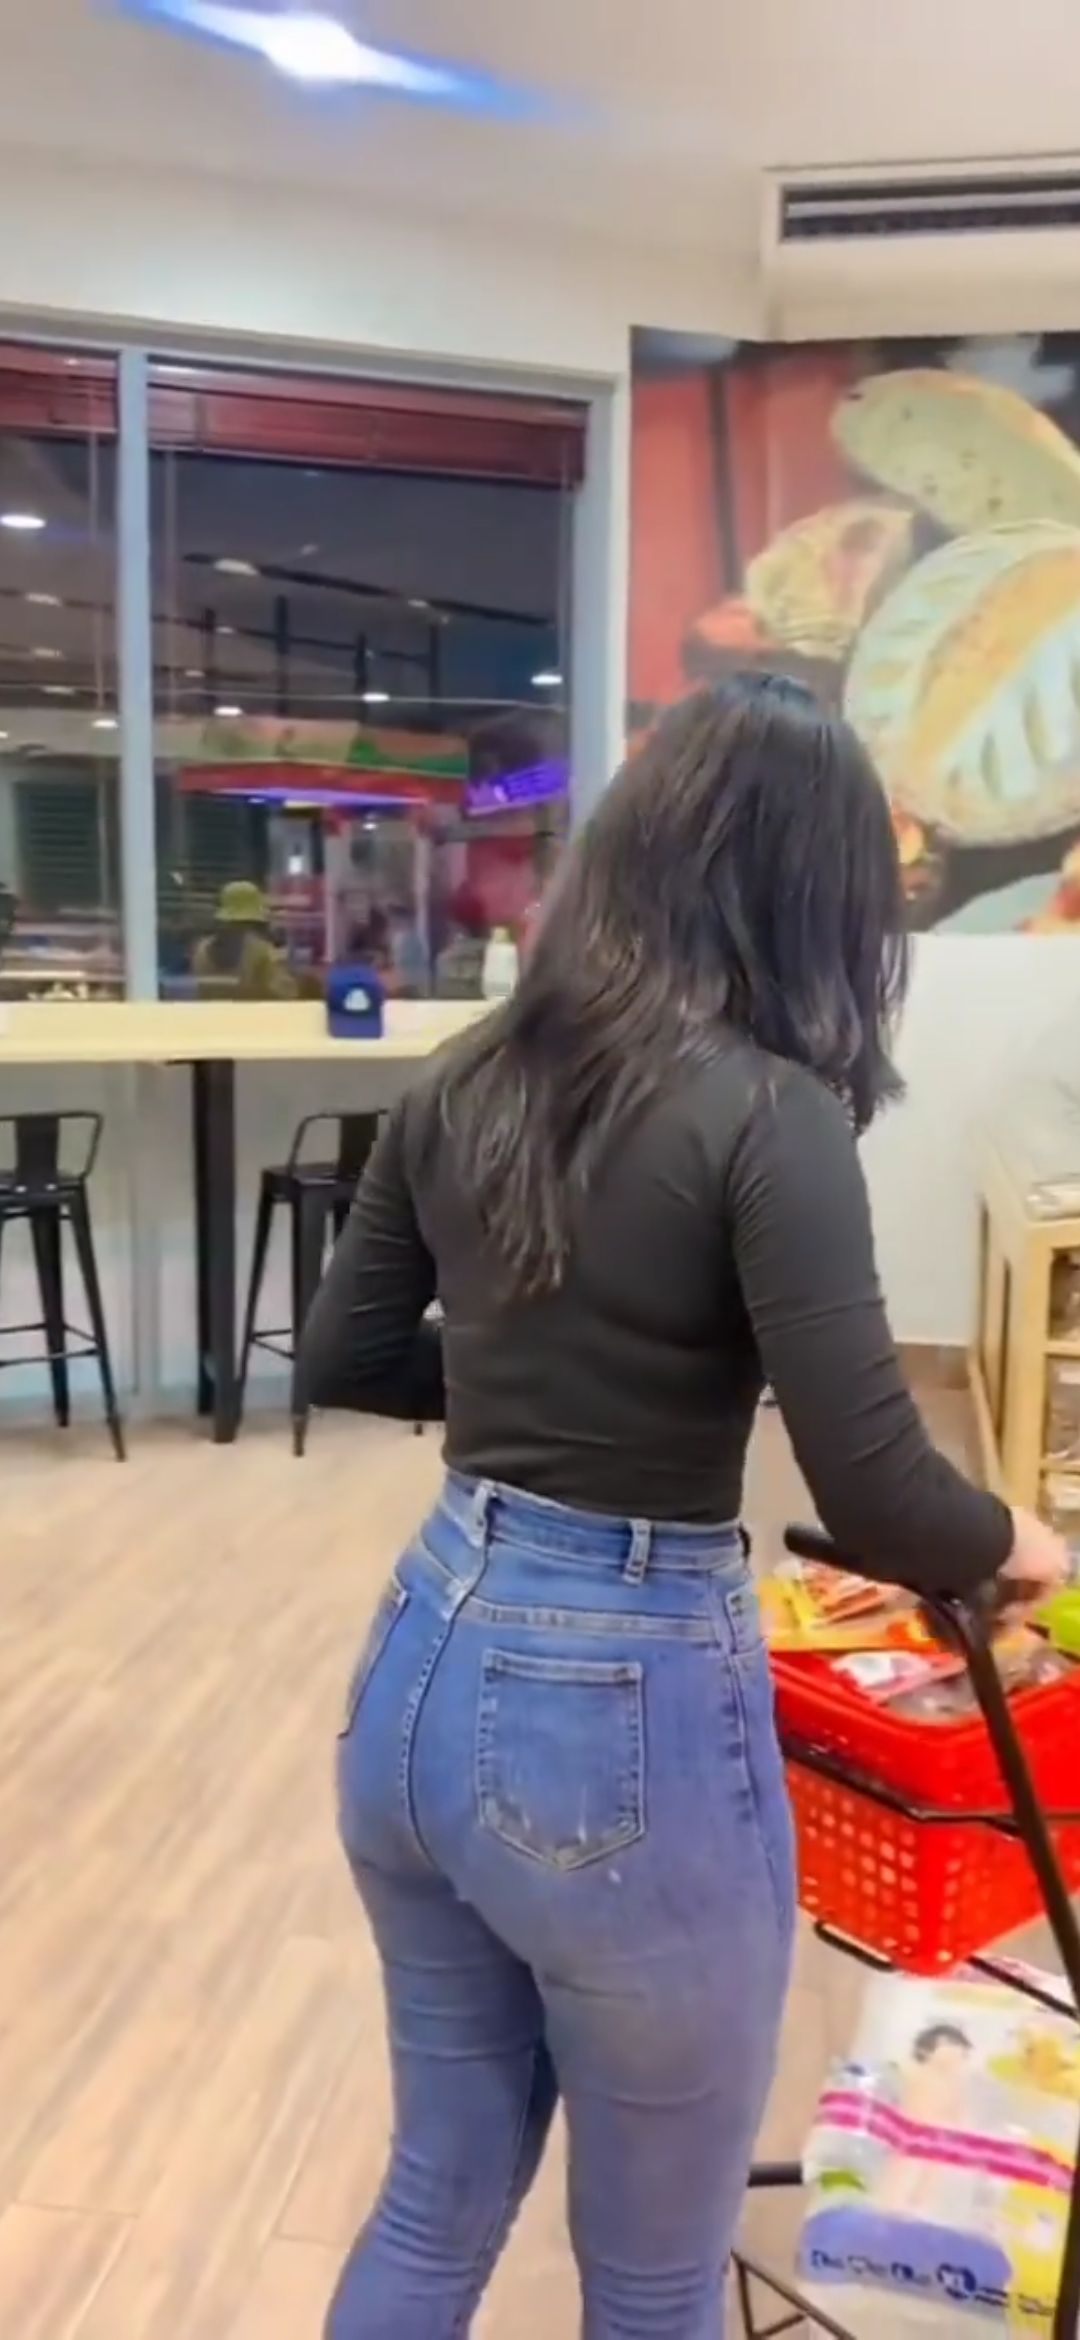 牛仔裤美女[视频]在情人去购物的越南牛仔裤美女牛仔裤美女